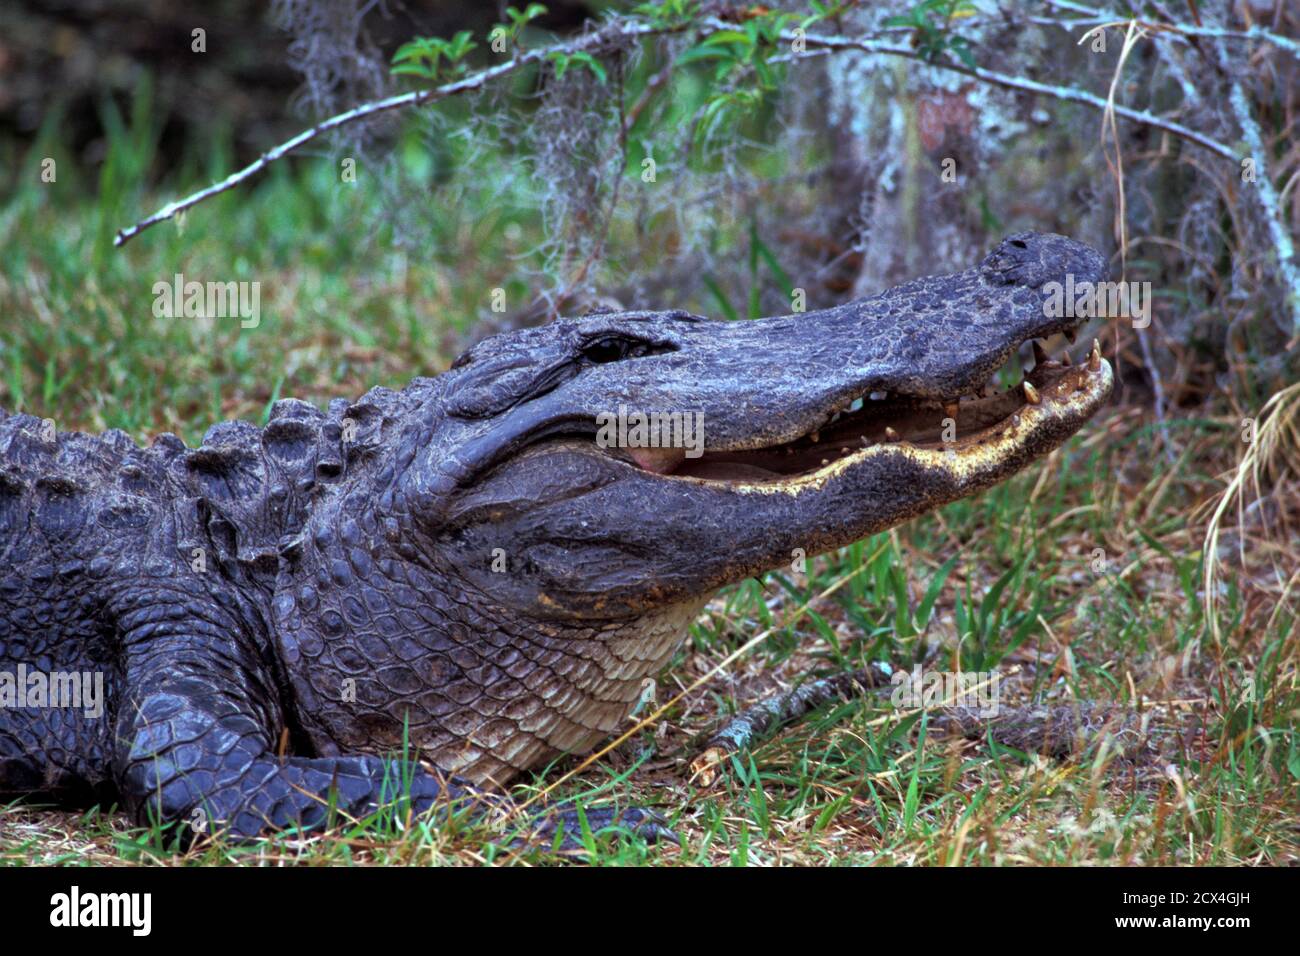 USA, Southern, Dixie, Georgia, Okefenokee National Wildlife Refuge, American Alligator Stock Photo